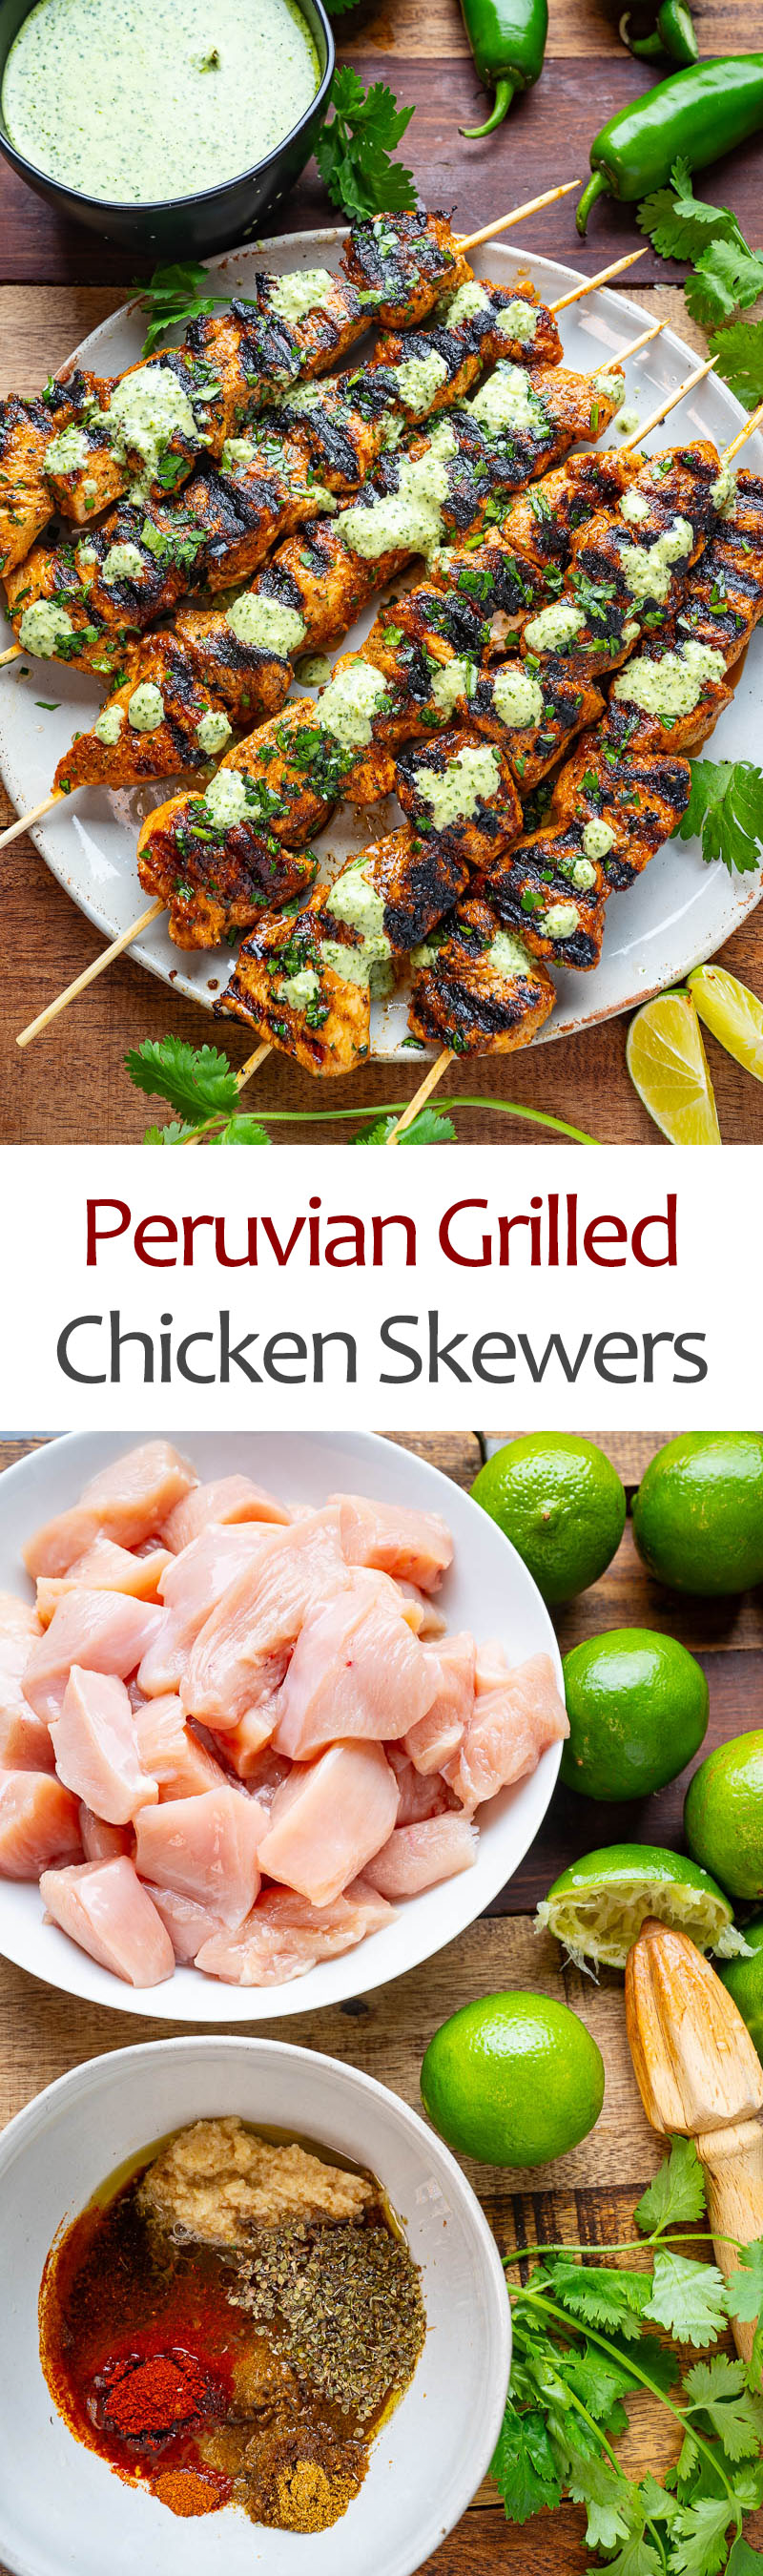 Peruvian Grilled Chicken Skewers